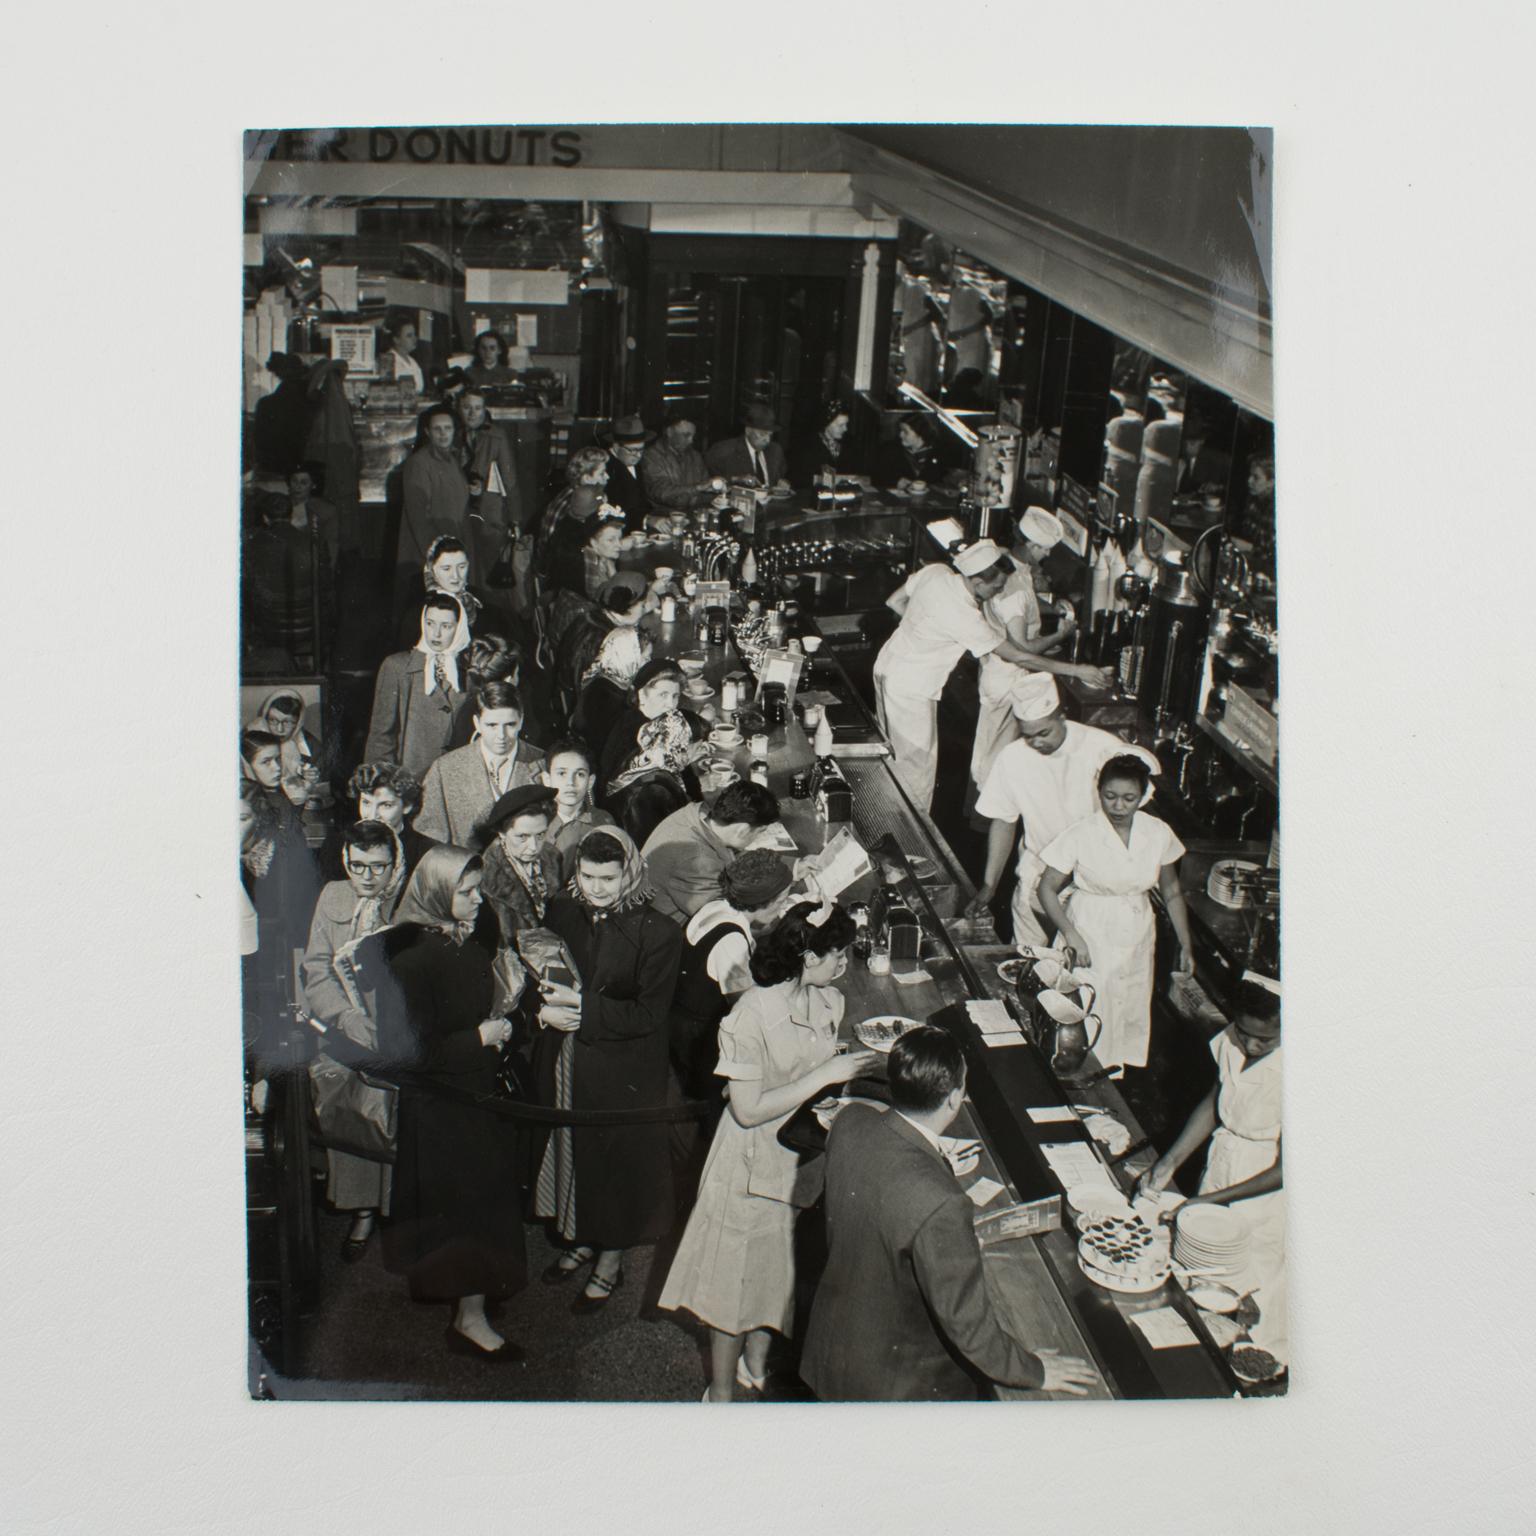 Silber-Gelatine-Schwarz-Weiß-Fotografie „A busy Diner in New York“, 1950 (Moderne), Photograph, von Press Agency Atlantic Press